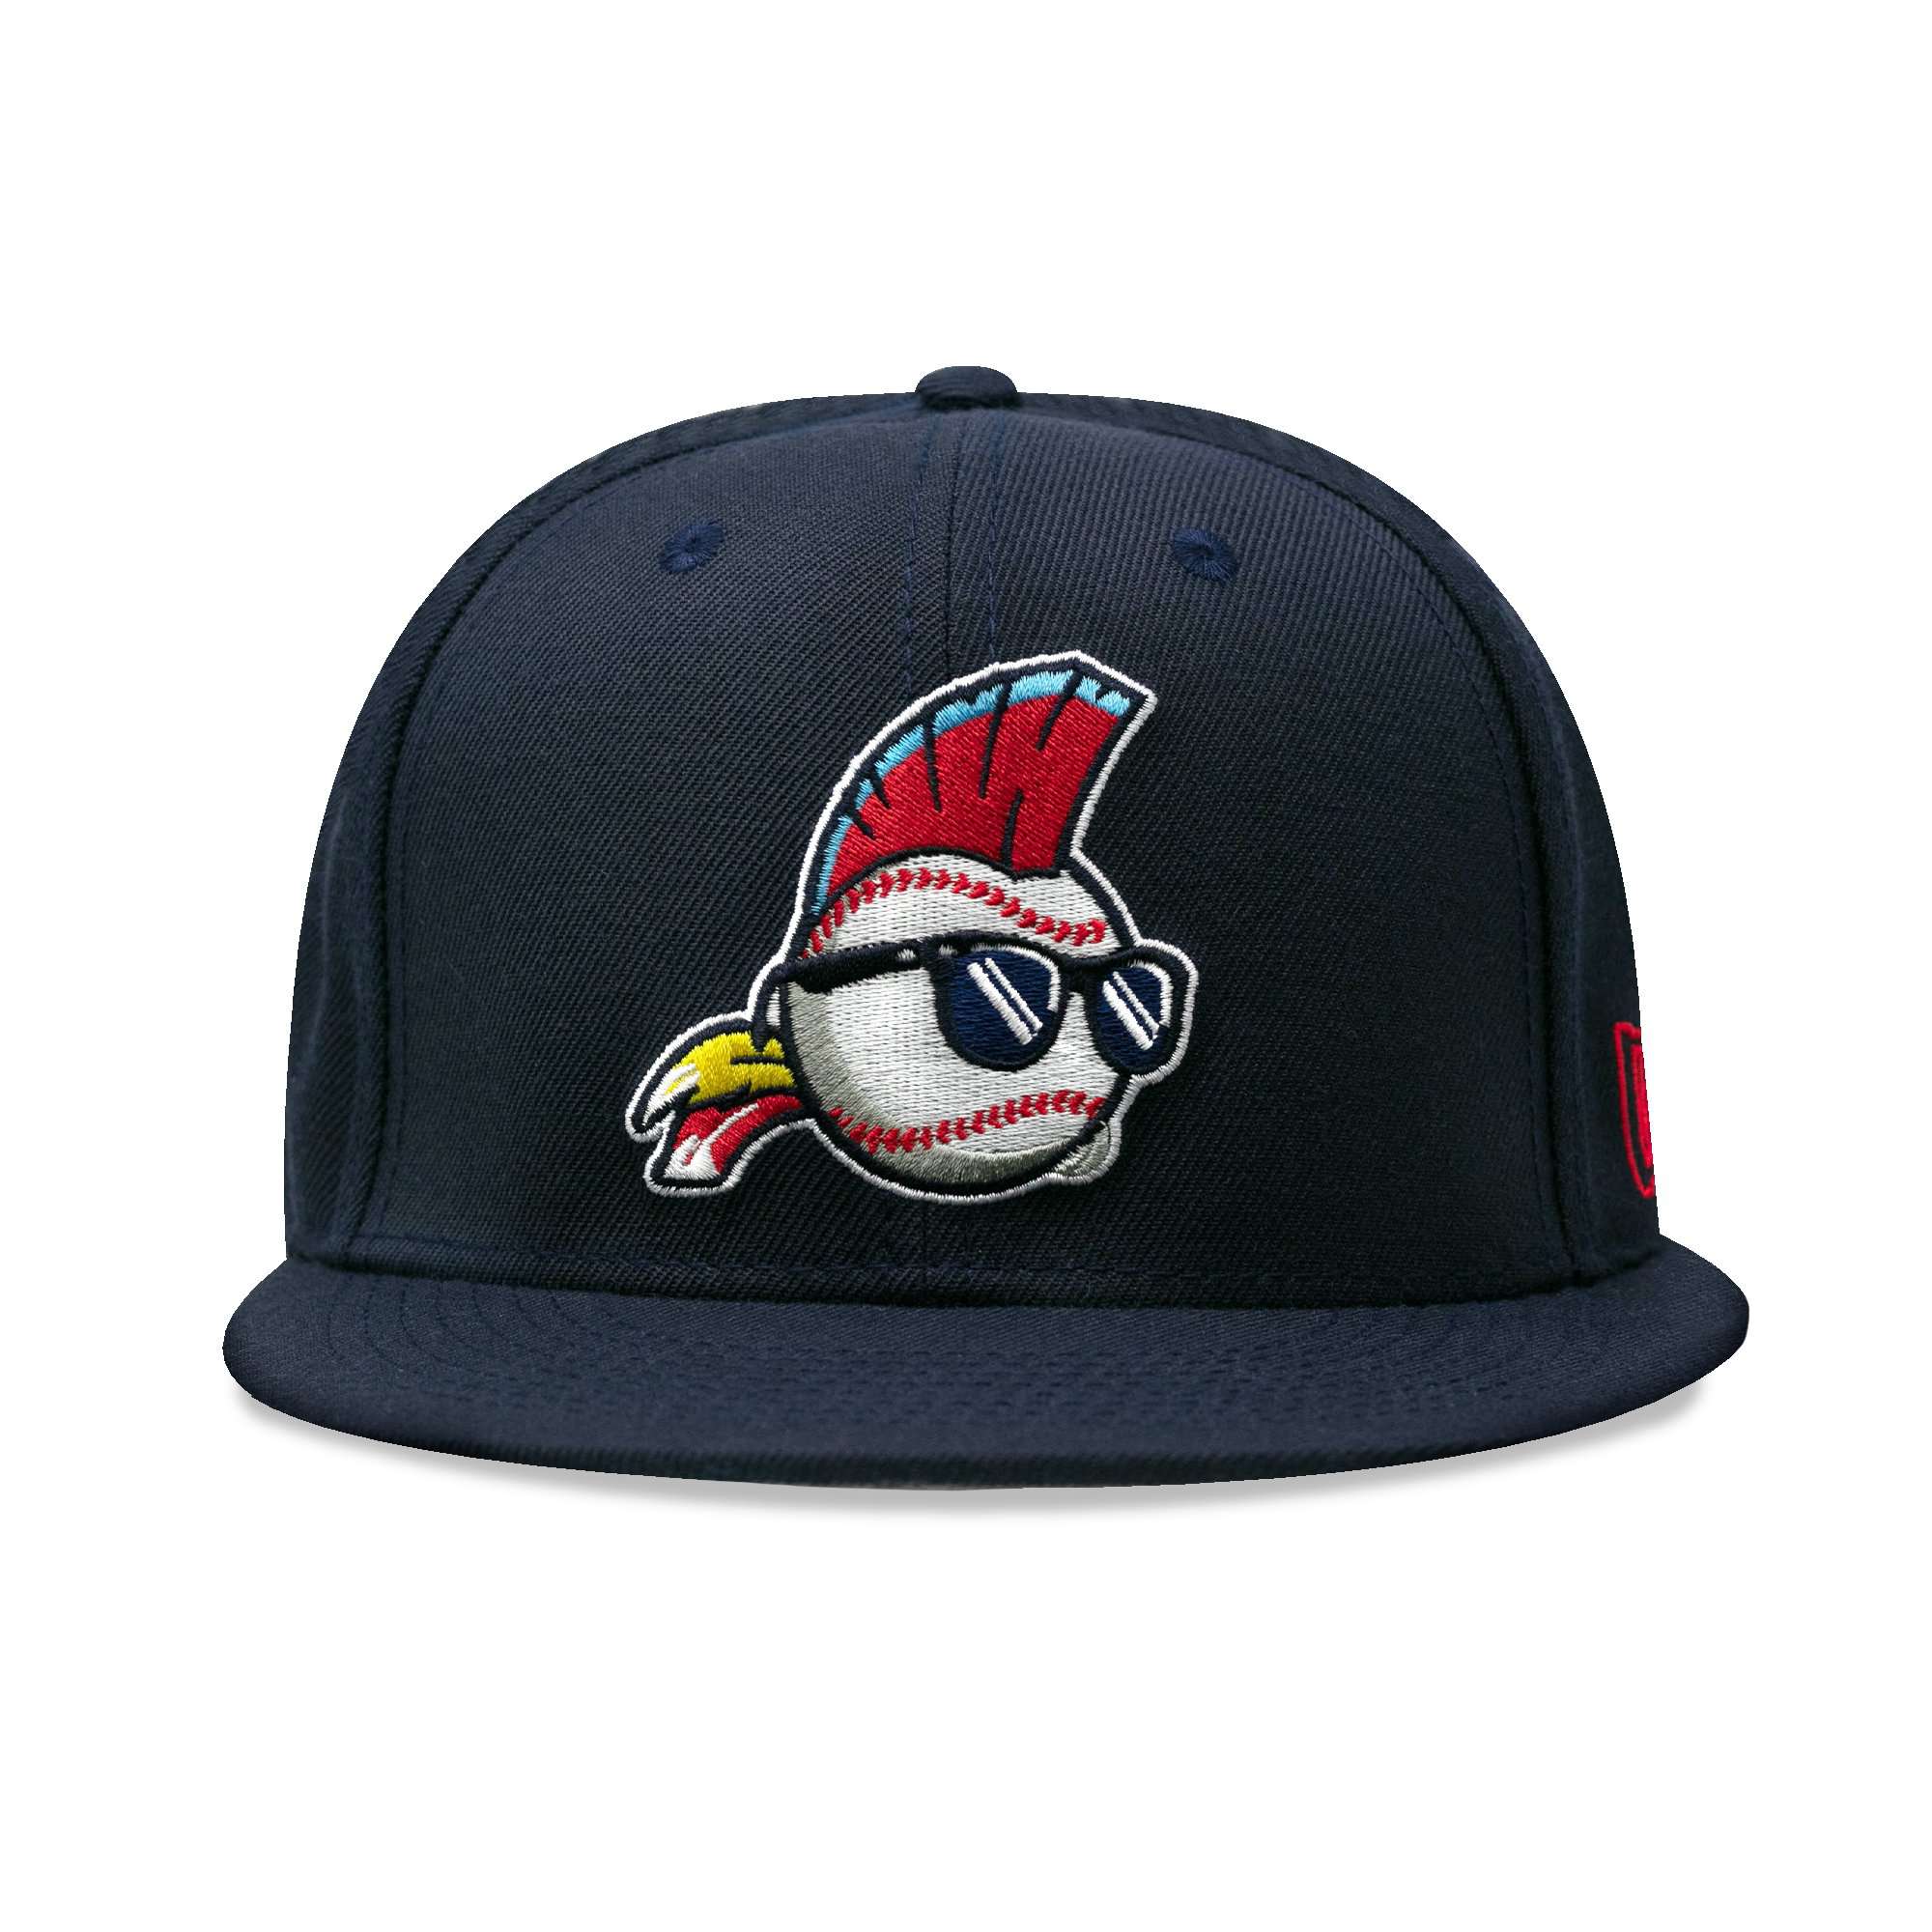 Major League Cap | Baseballism x Major League Collection 7 3/8